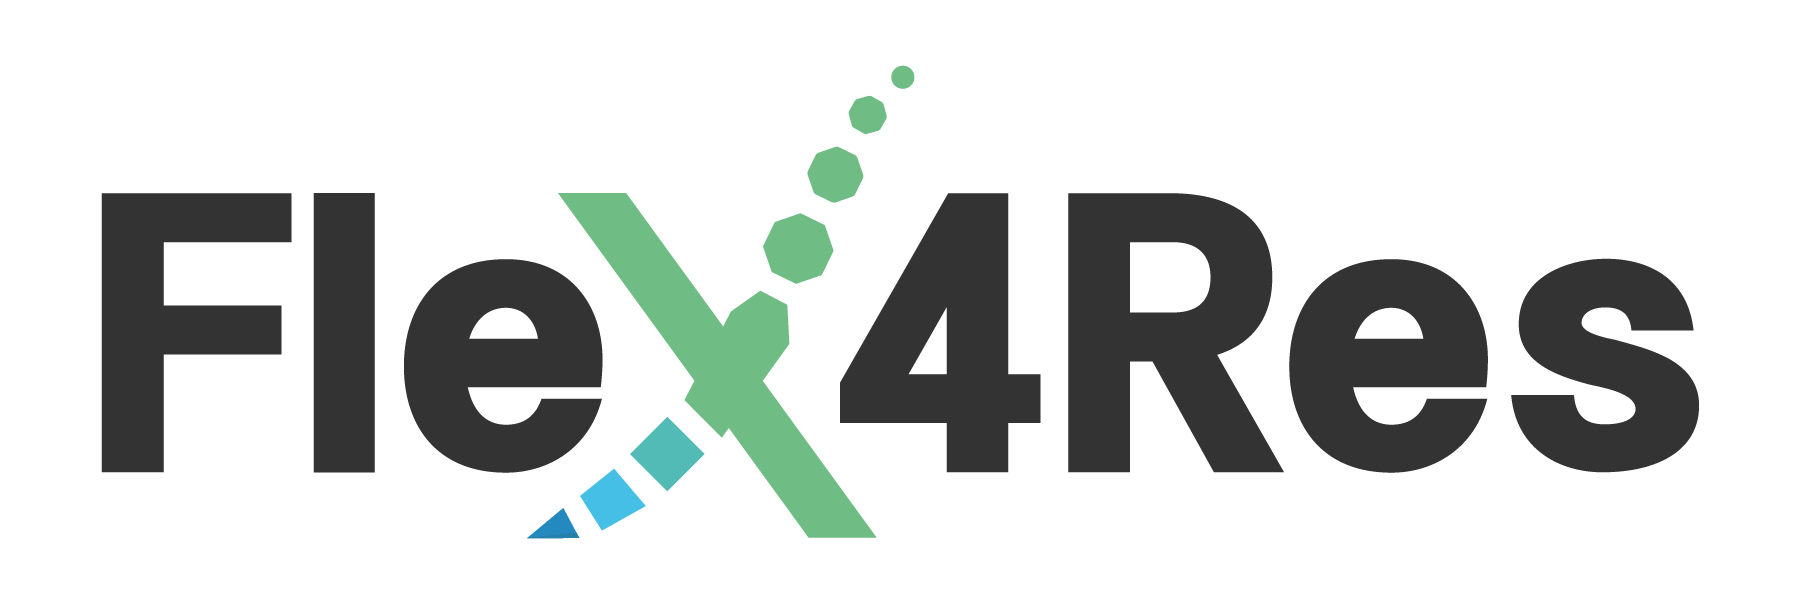 Flex4Res logo